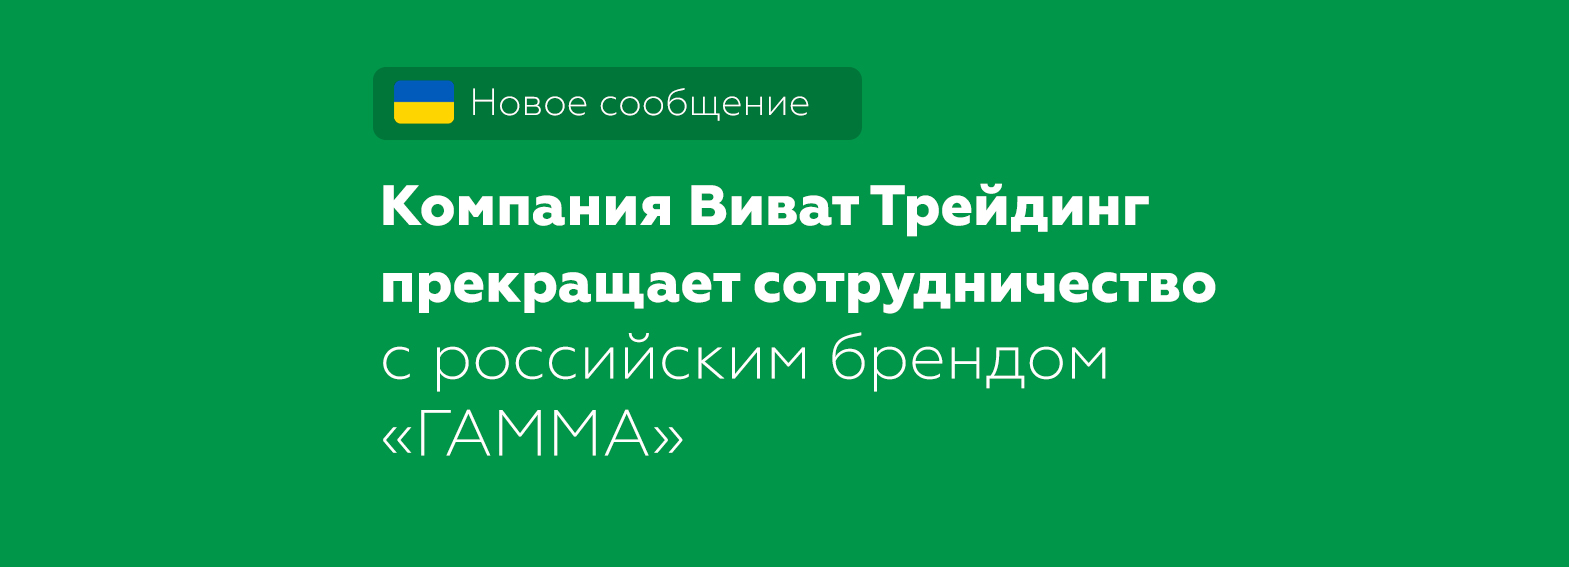 Компания Виват Трейдинг прекращает сотрудничество с российским брендом «ГАММА»